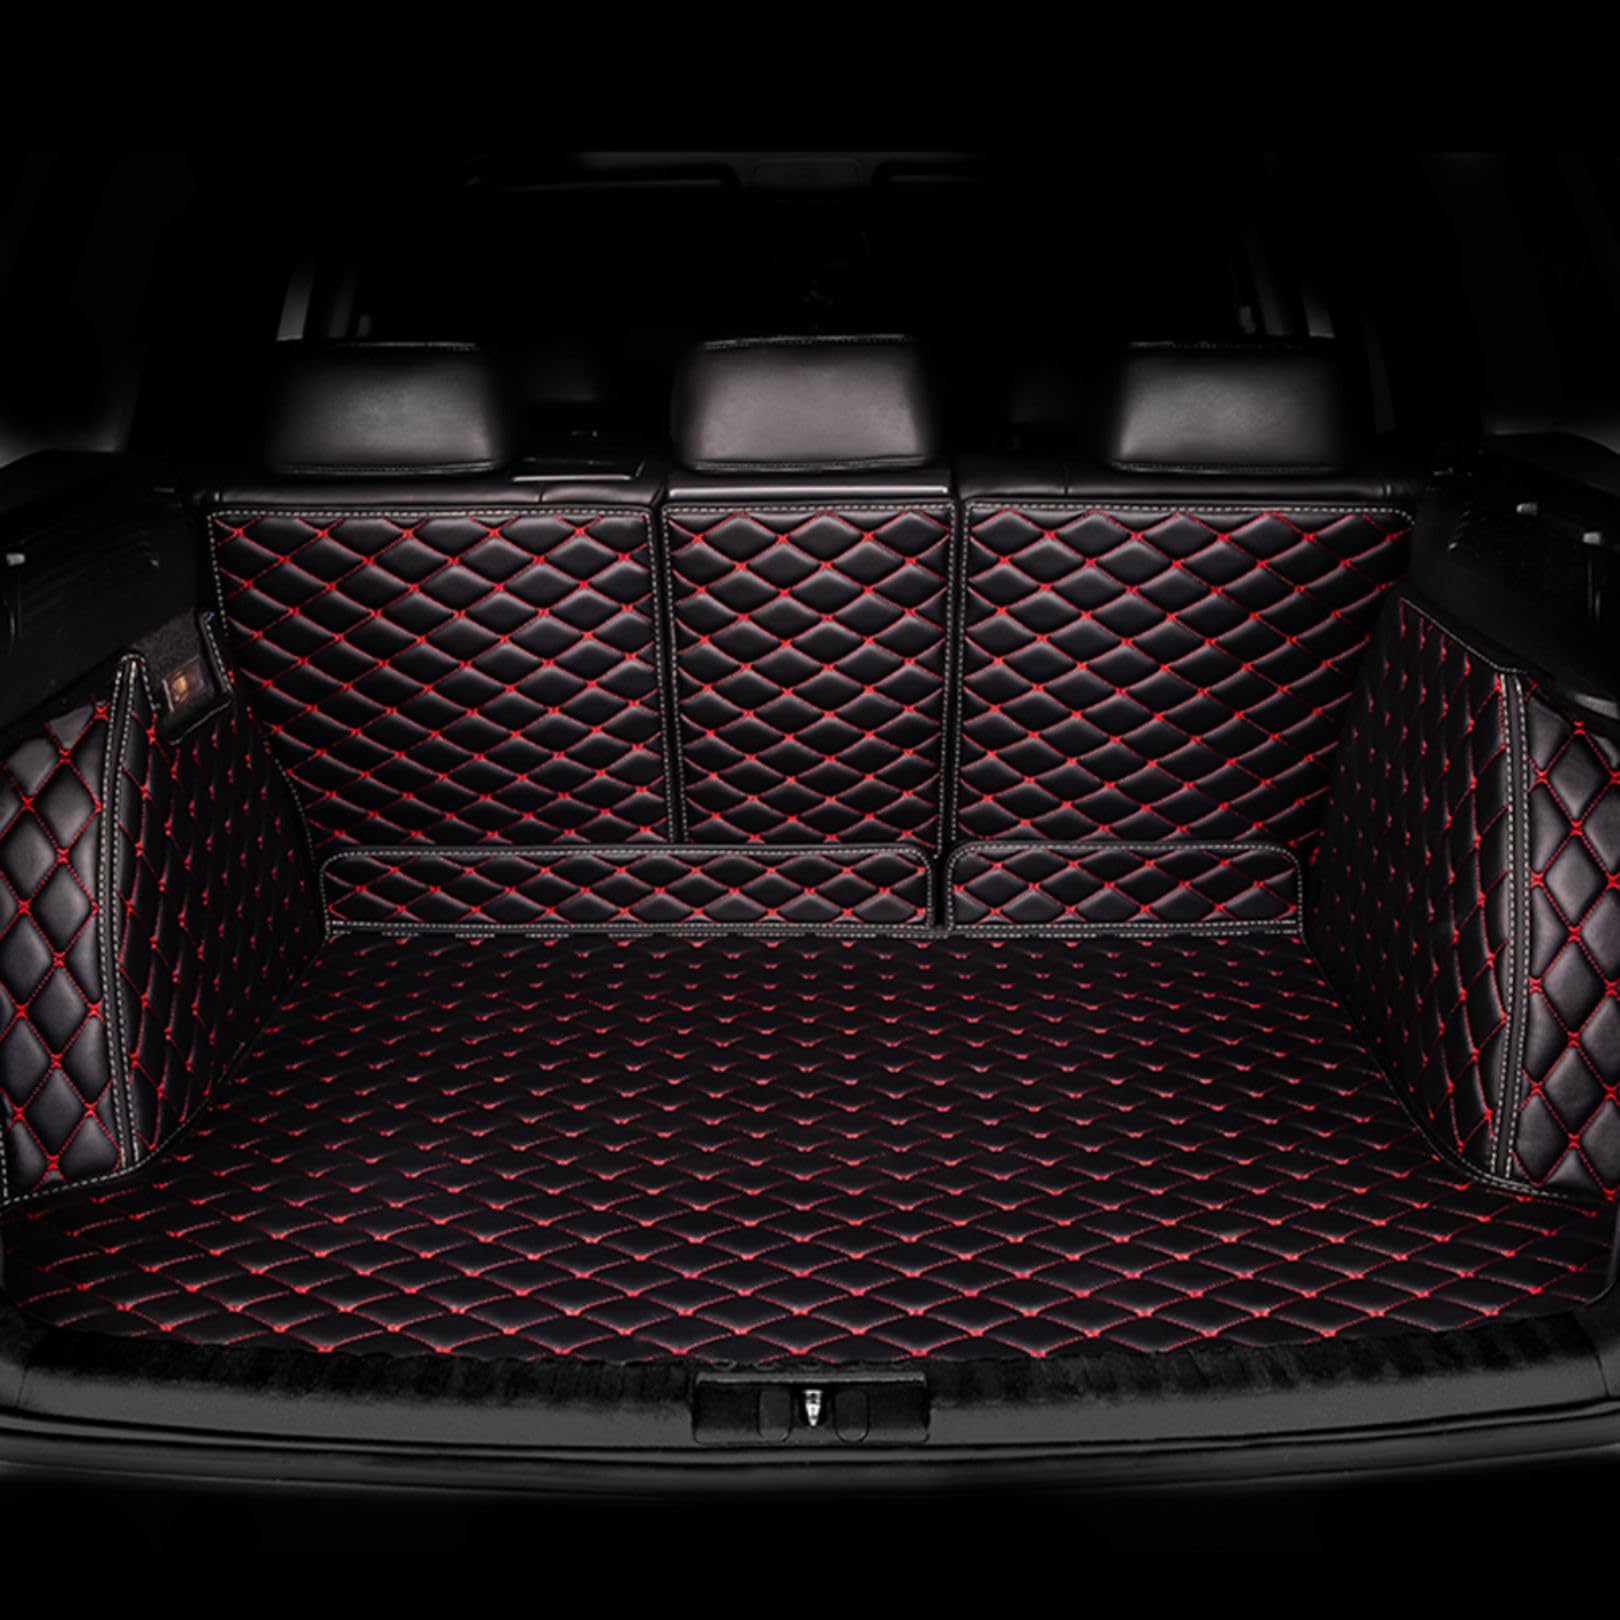 Auto Vollständiger Abdeckung Kofferraummatte für Hyundai New SantaFe 2013-2018 (7 seats), Leder Wasserdicht Kofferraumwanne, Kofferraum Schutzmatte Innenraum ZubehöR,Black-Red von WYXFCBF